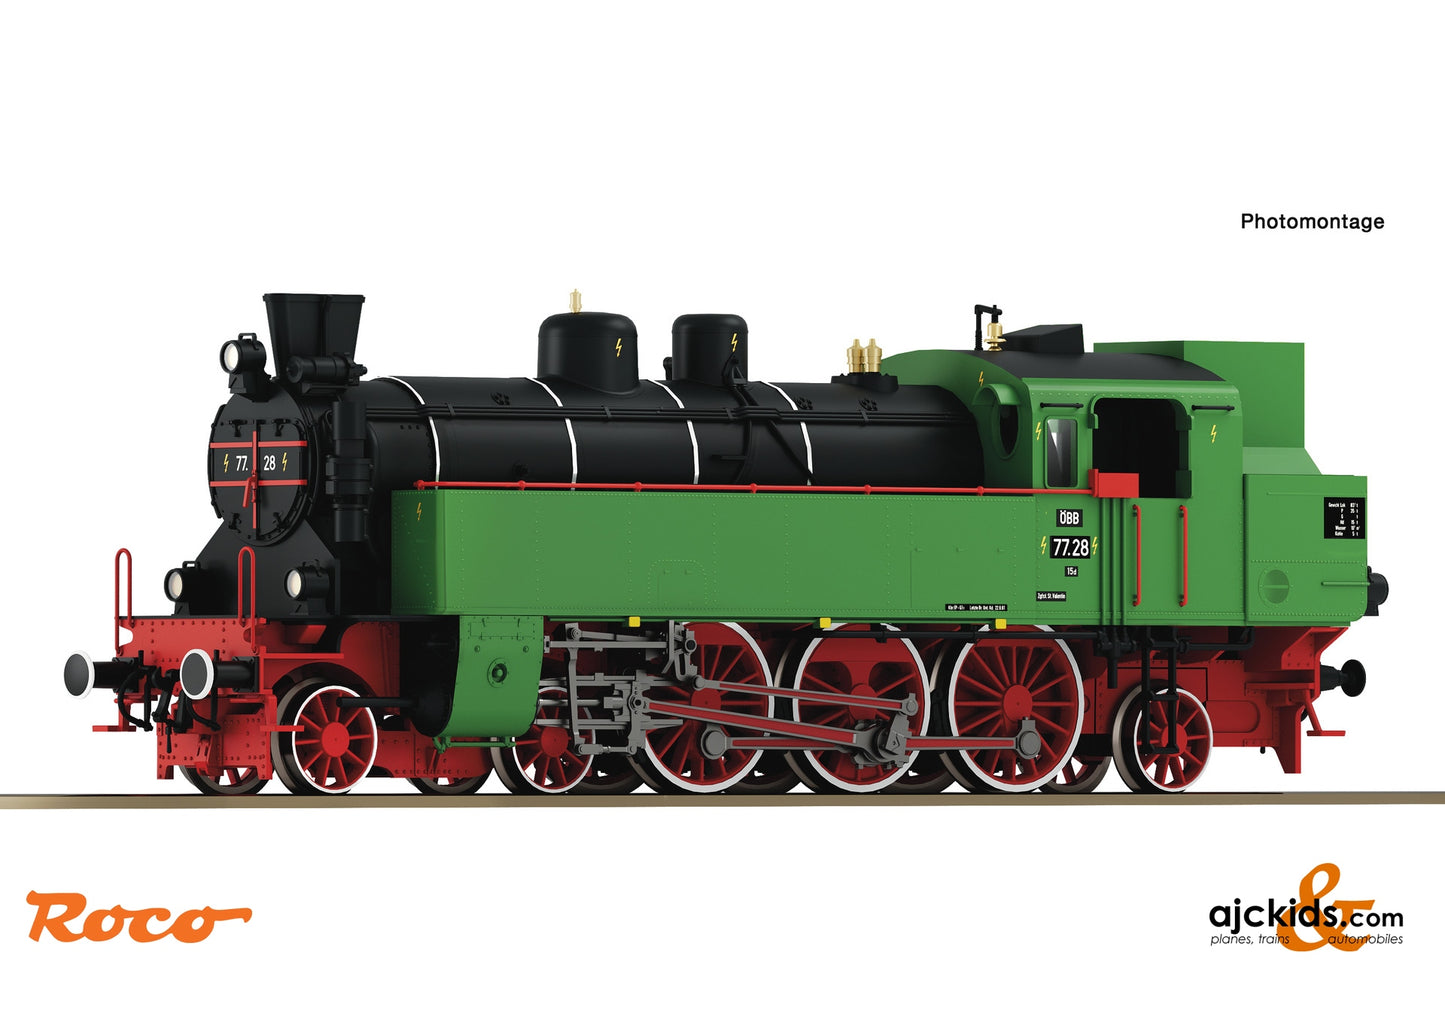 Roco 70083 - Steam locomotive 77.28, ÖBB at Ajckids.com